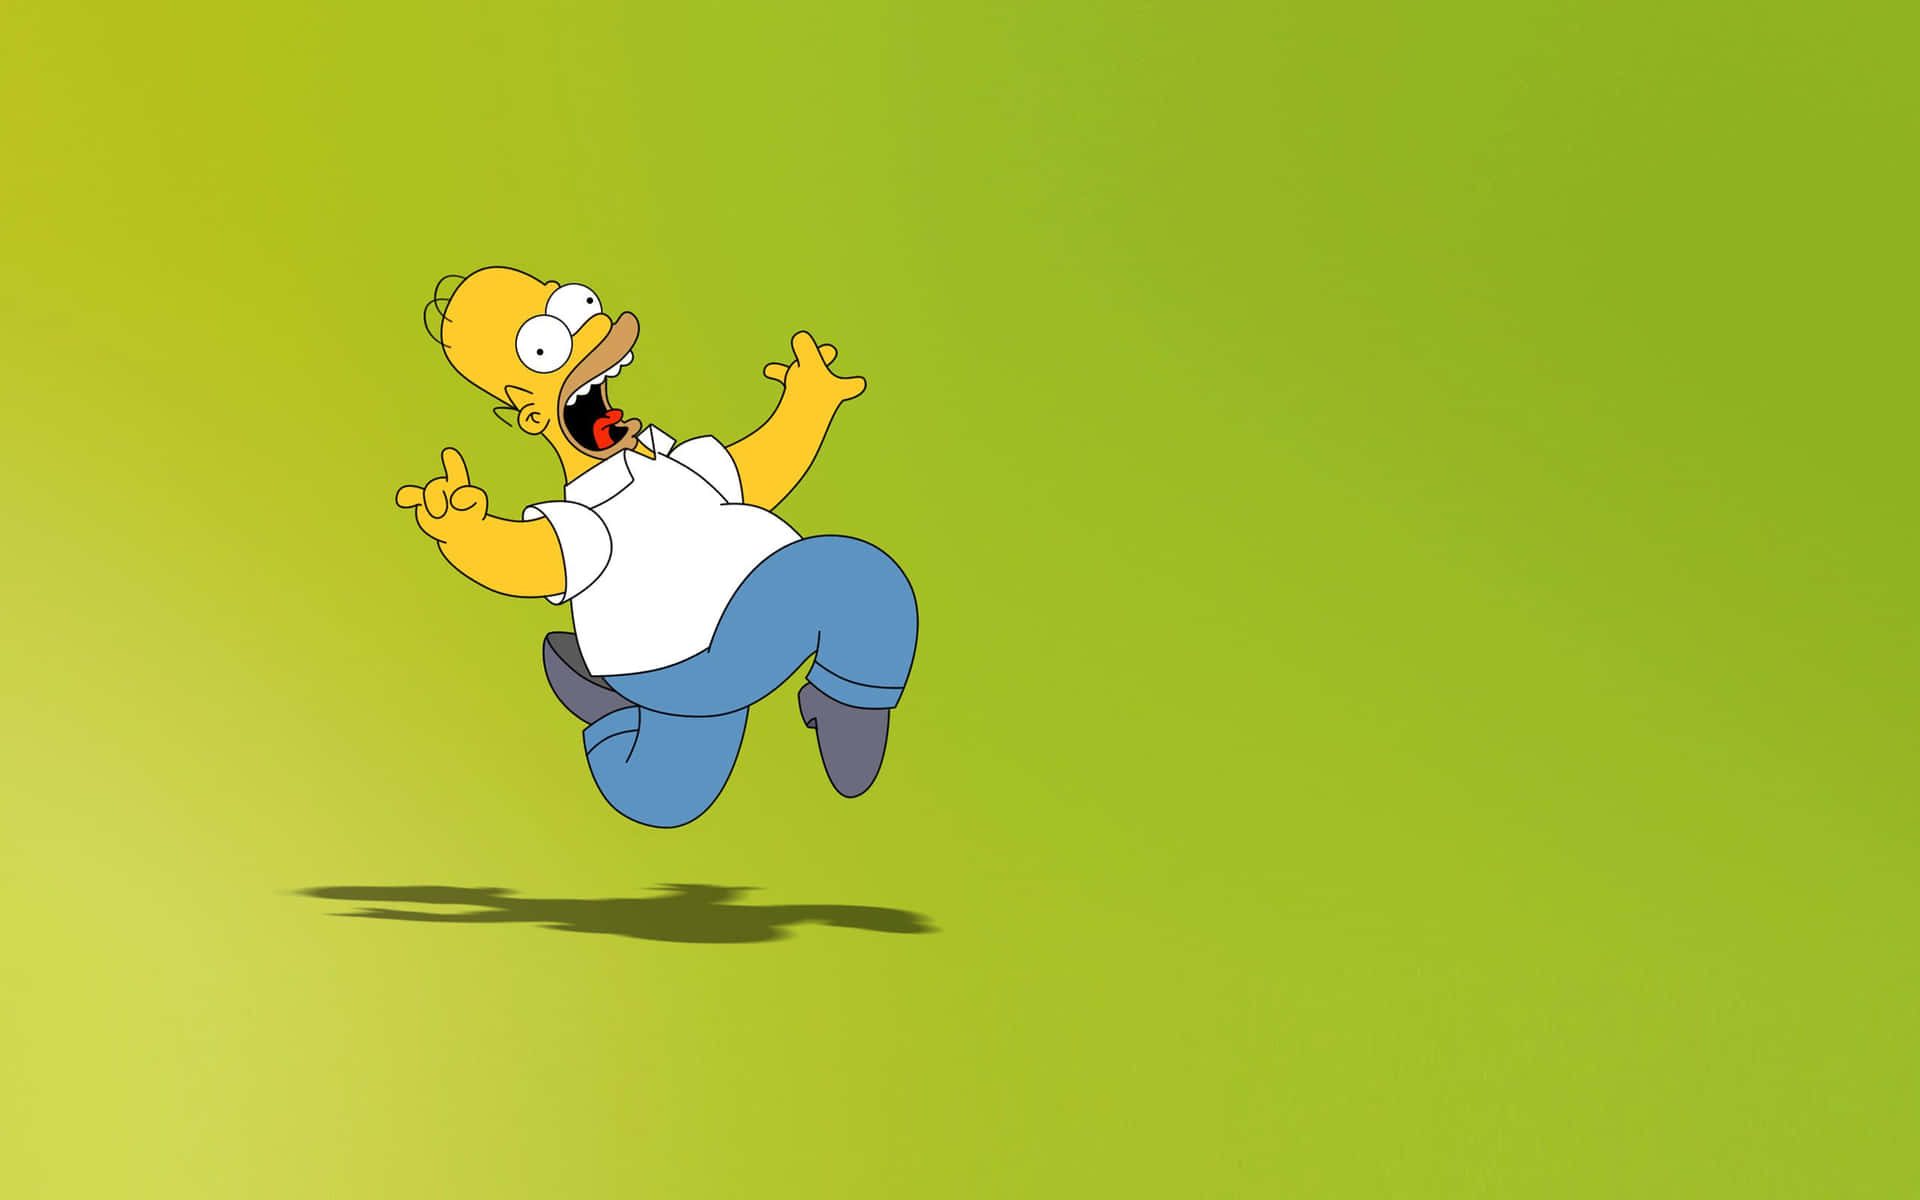 Eshora De Ponerte Con Tu Homer En Pc Al Estilo De Los Simpsons. Fondo de pantalla